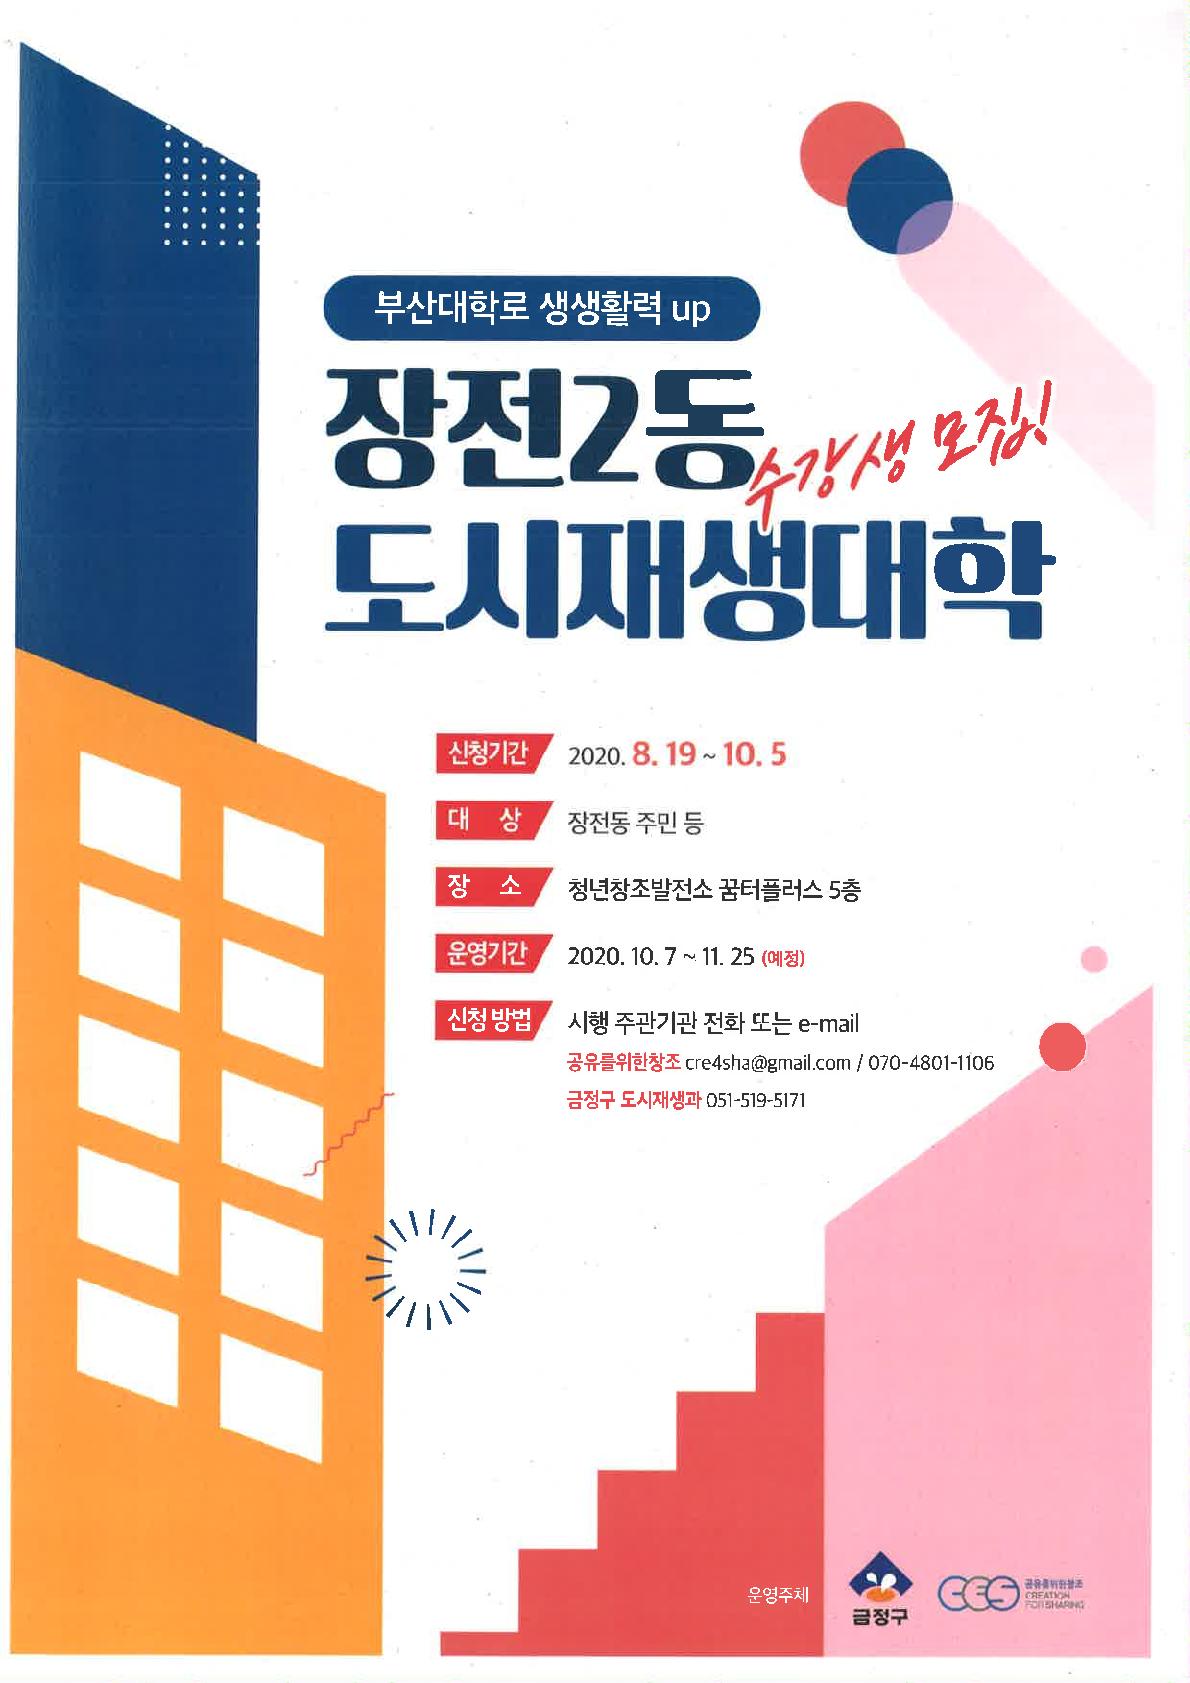 도시재생대학 홍보 포스터_1.jpg : 부산대학로의 도시재생을 위한 도시재생대학에 당신을 초대합니다!